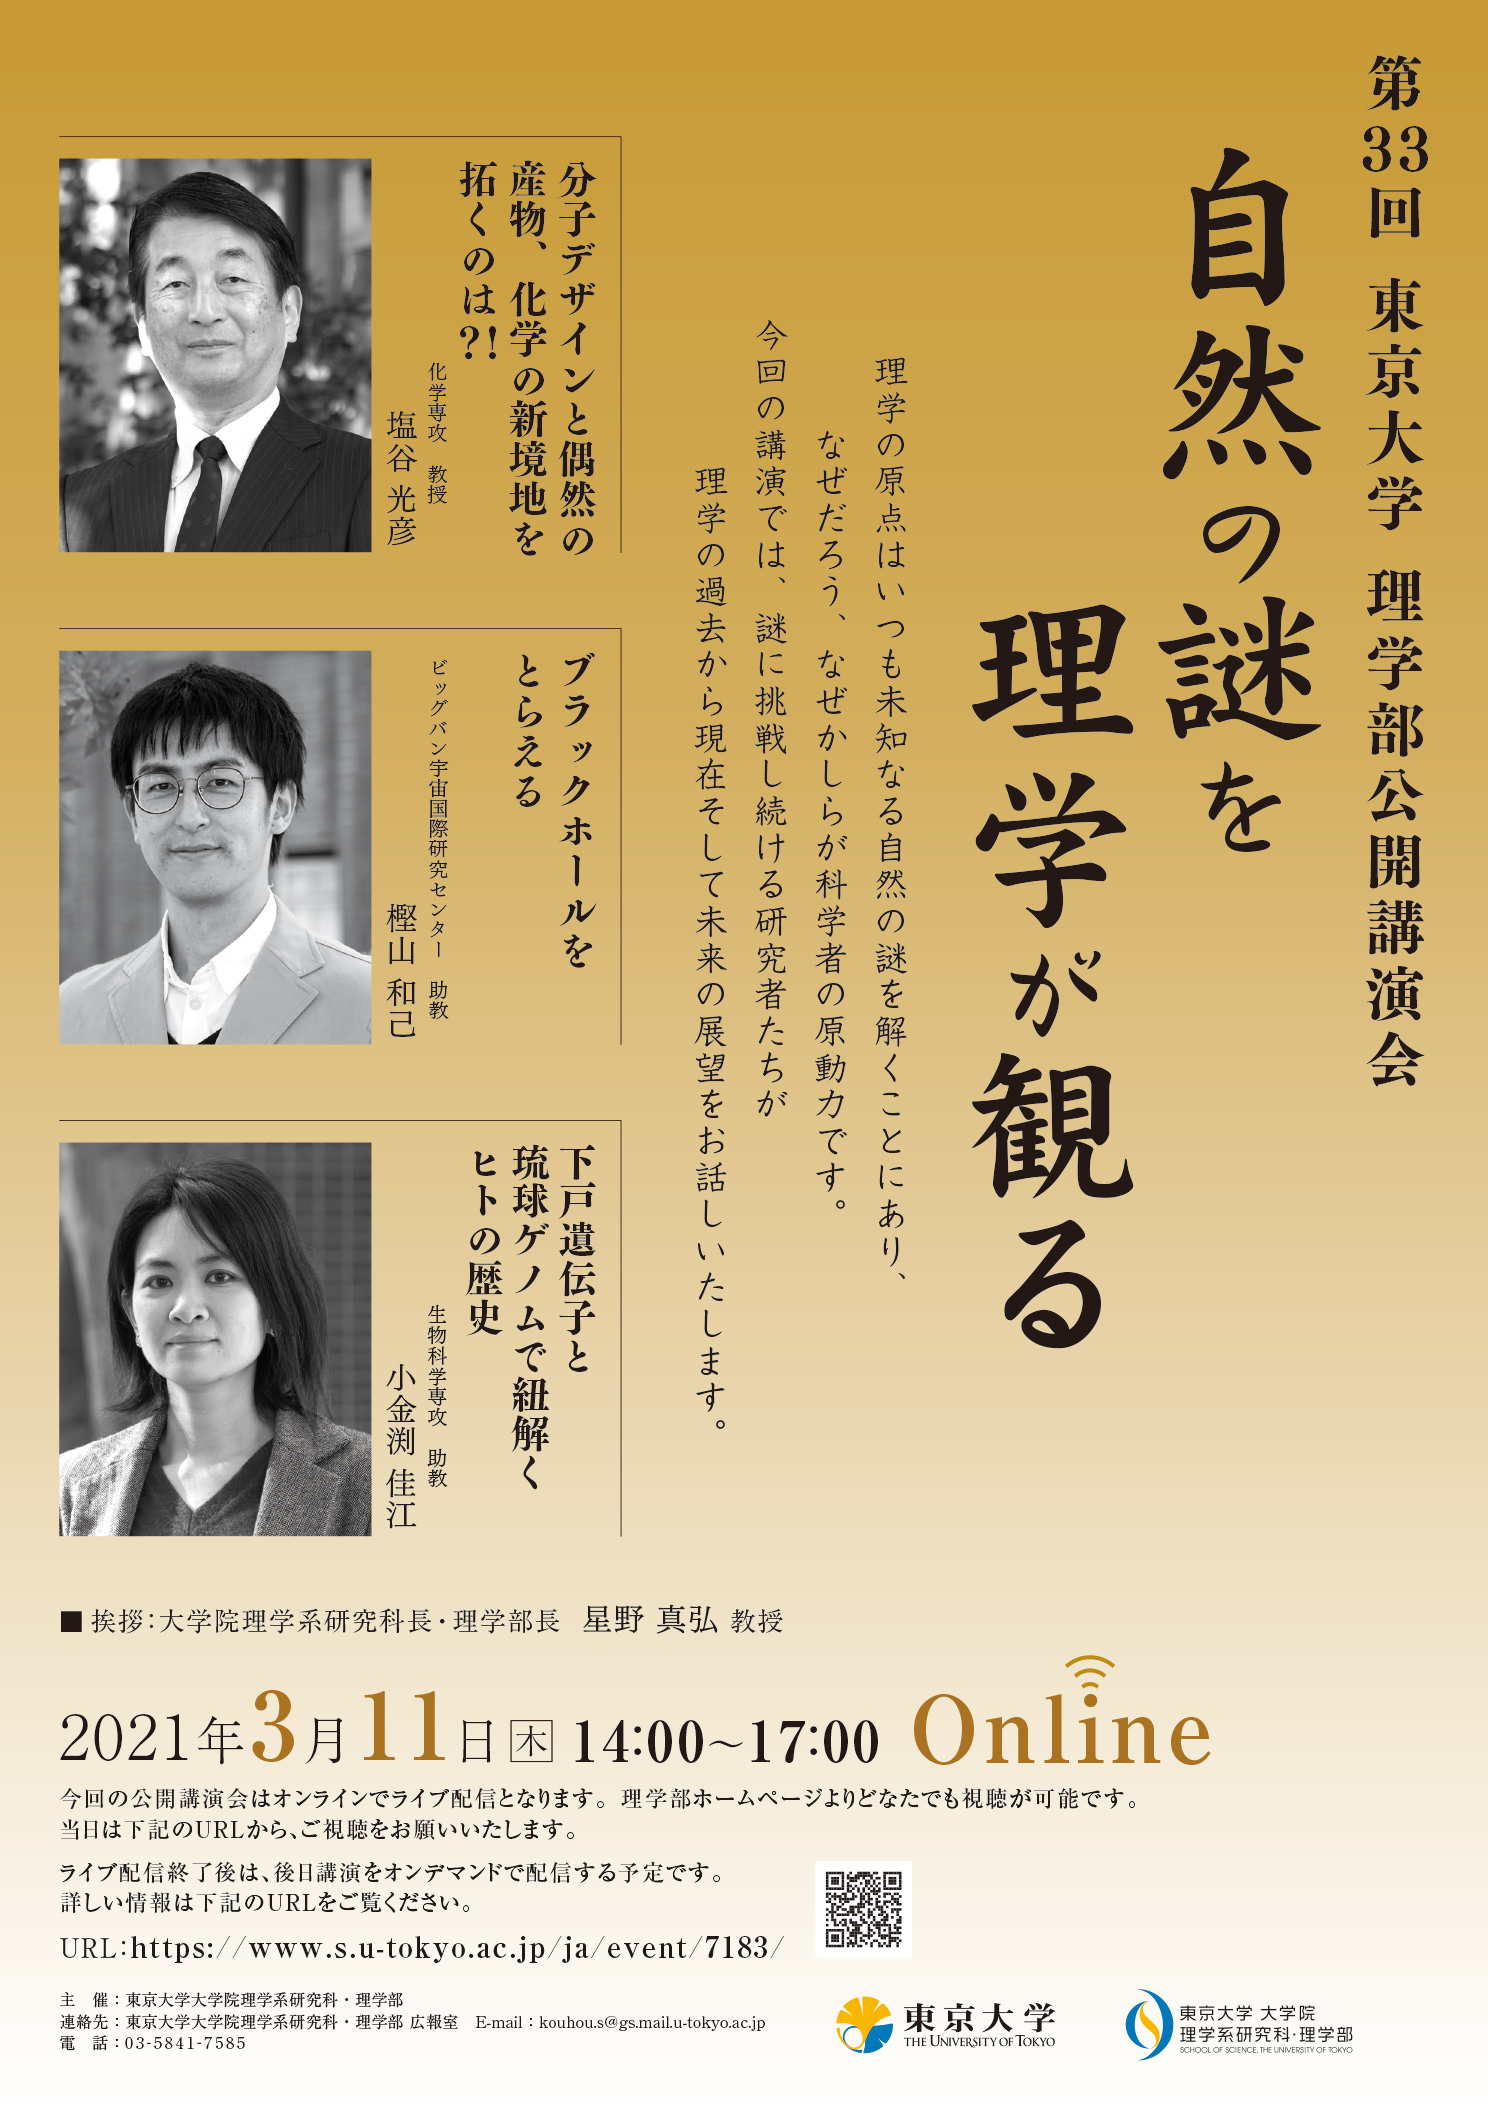 第33回東京大学理学部公開講演会 Online